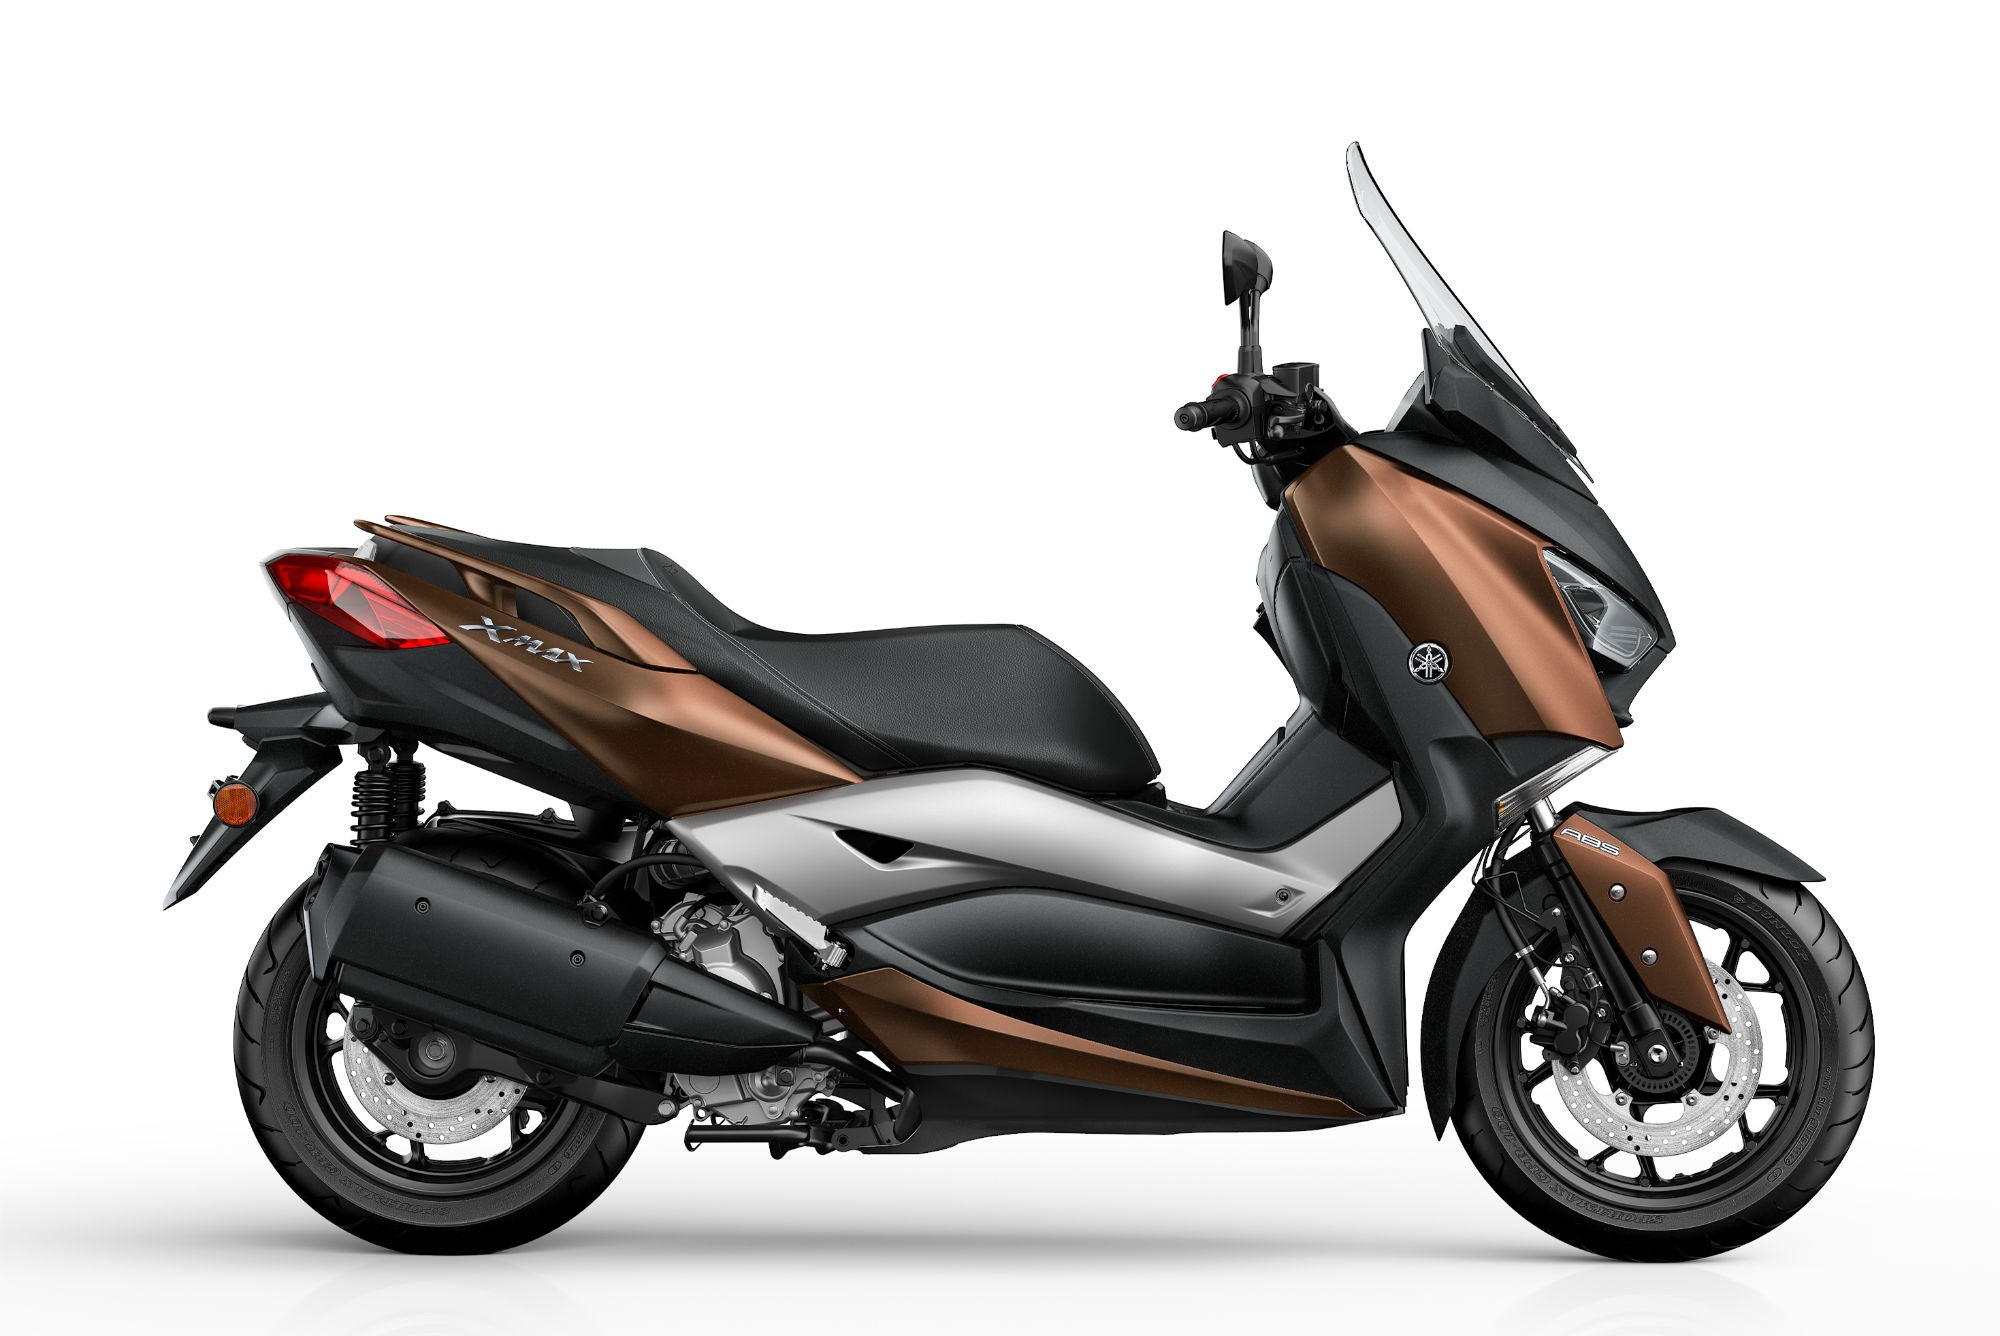 Melangkah Lebih Jauh dengan Performa dan Keunggulan Fitur Motor Yamaha XMAX 300